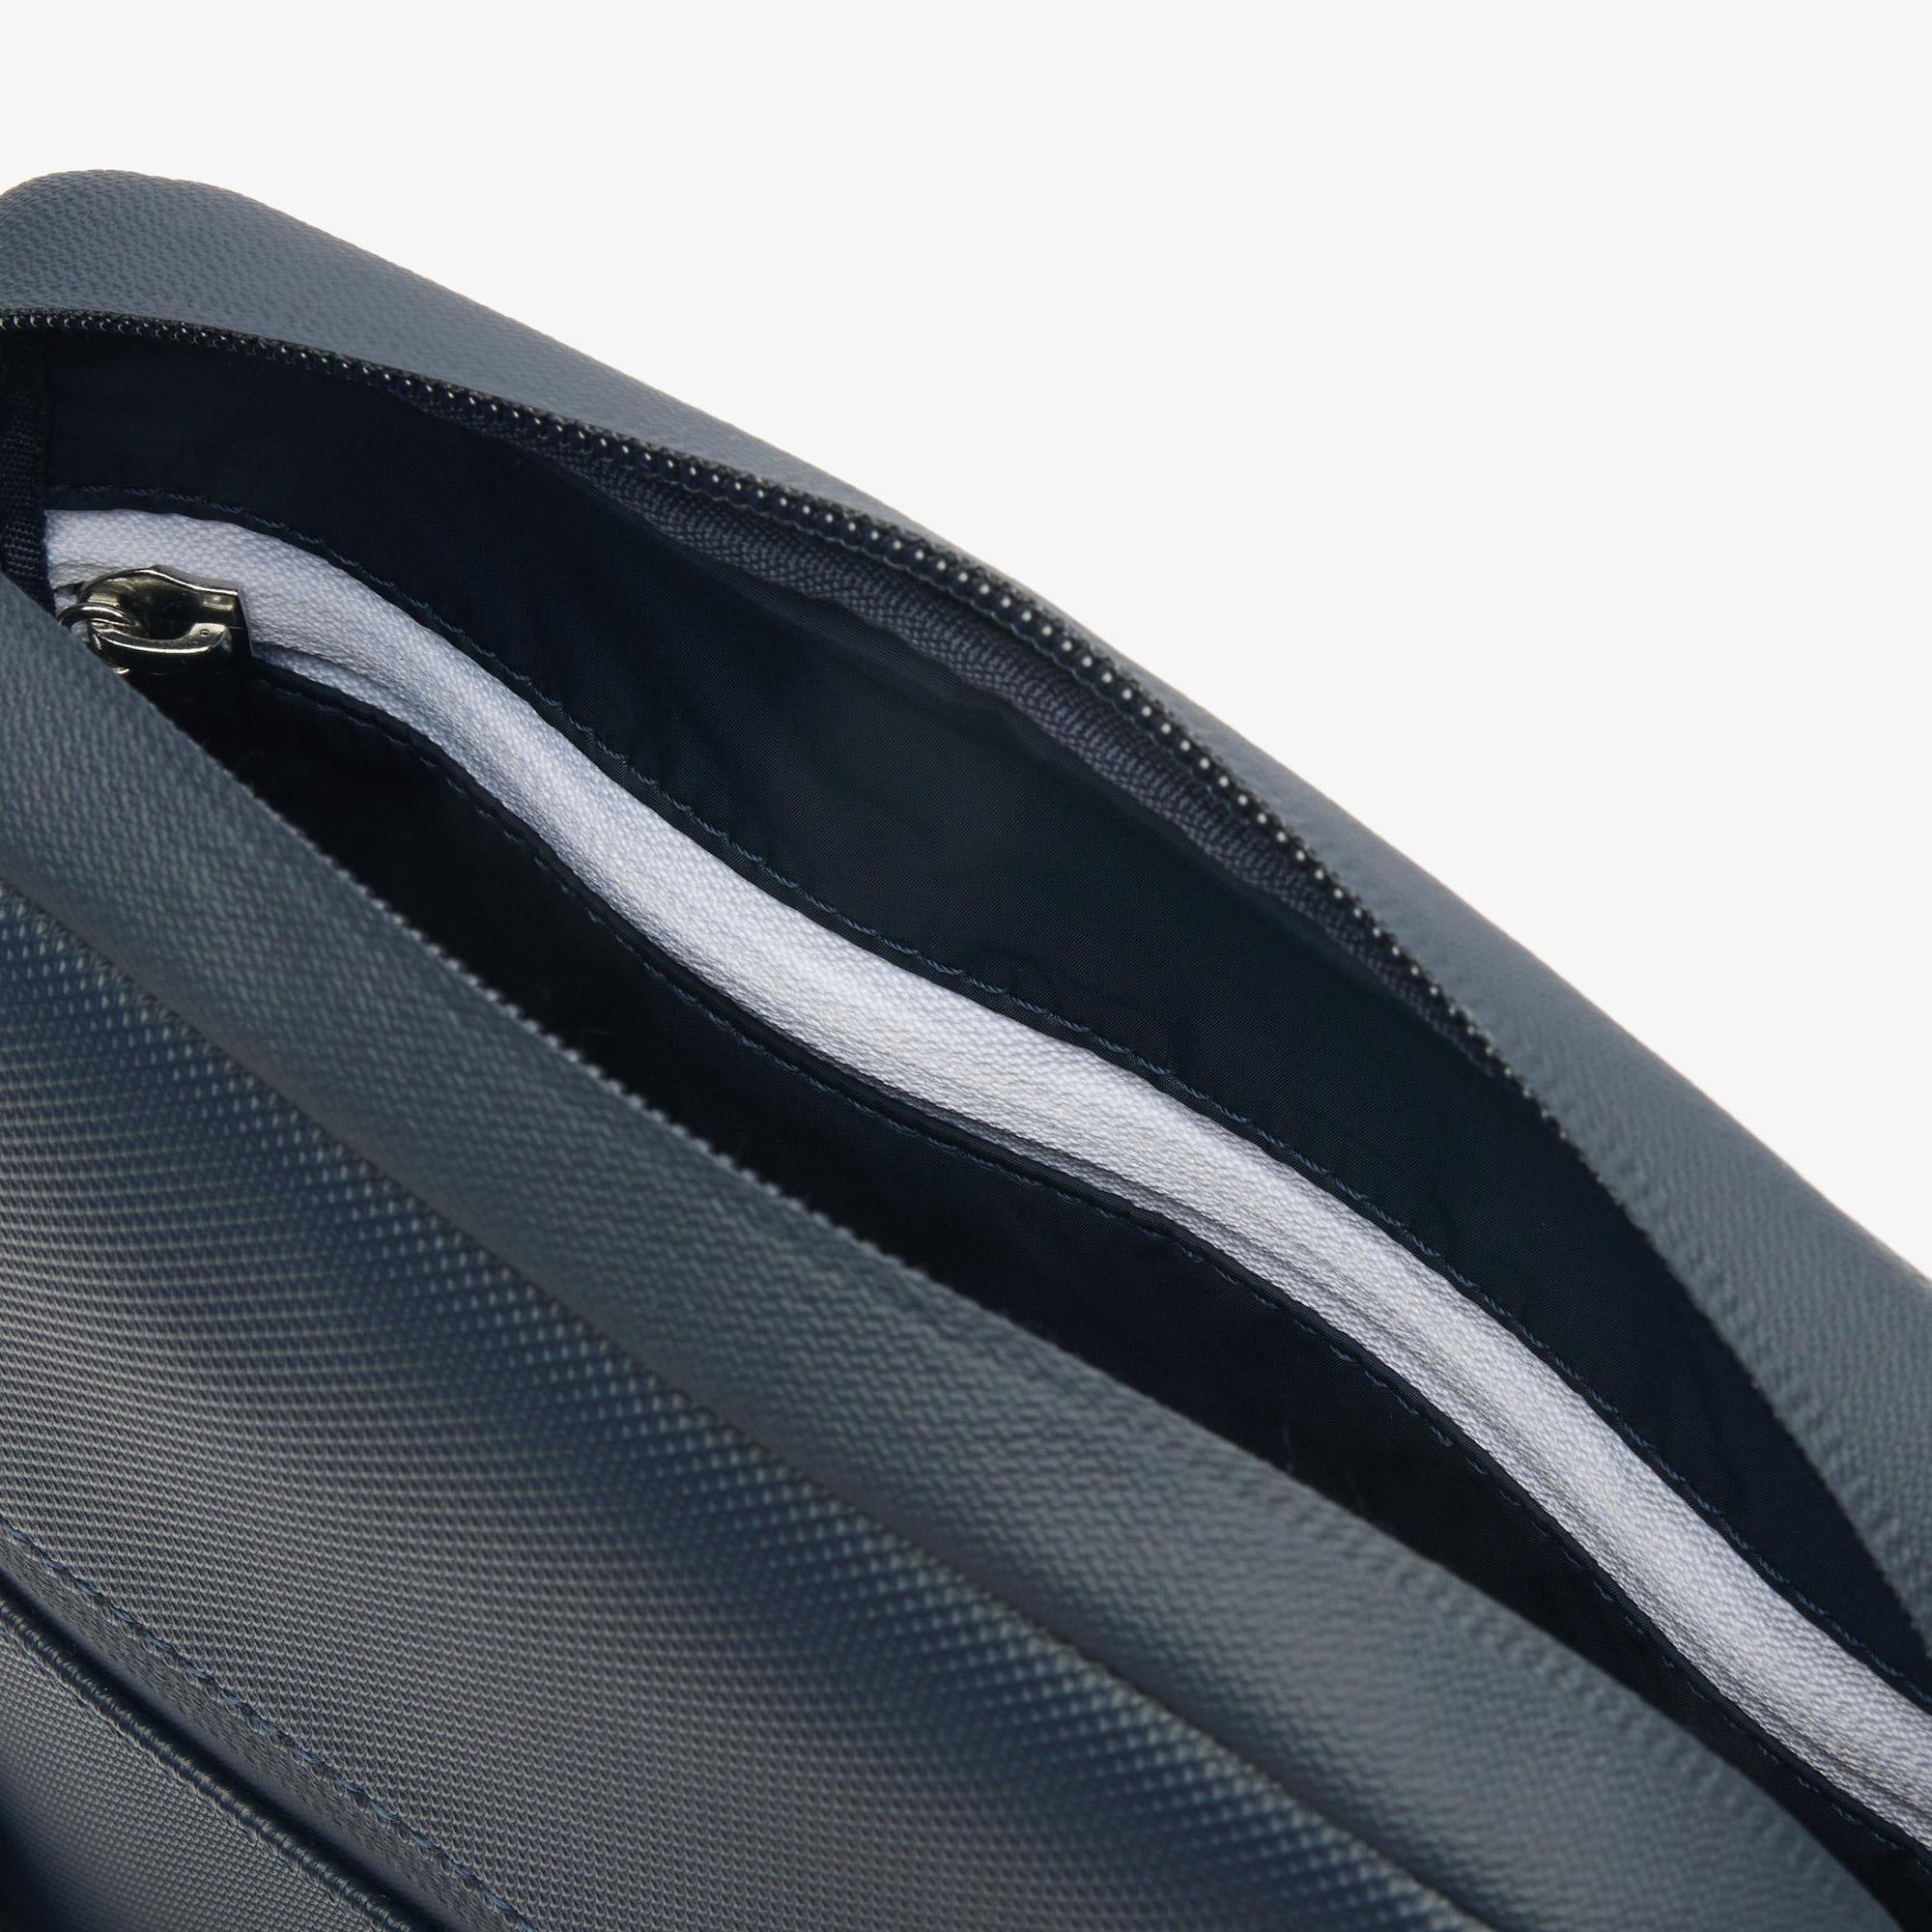 Lacoste Men's Medium  Zippered Petit Piqué Crossover Bag